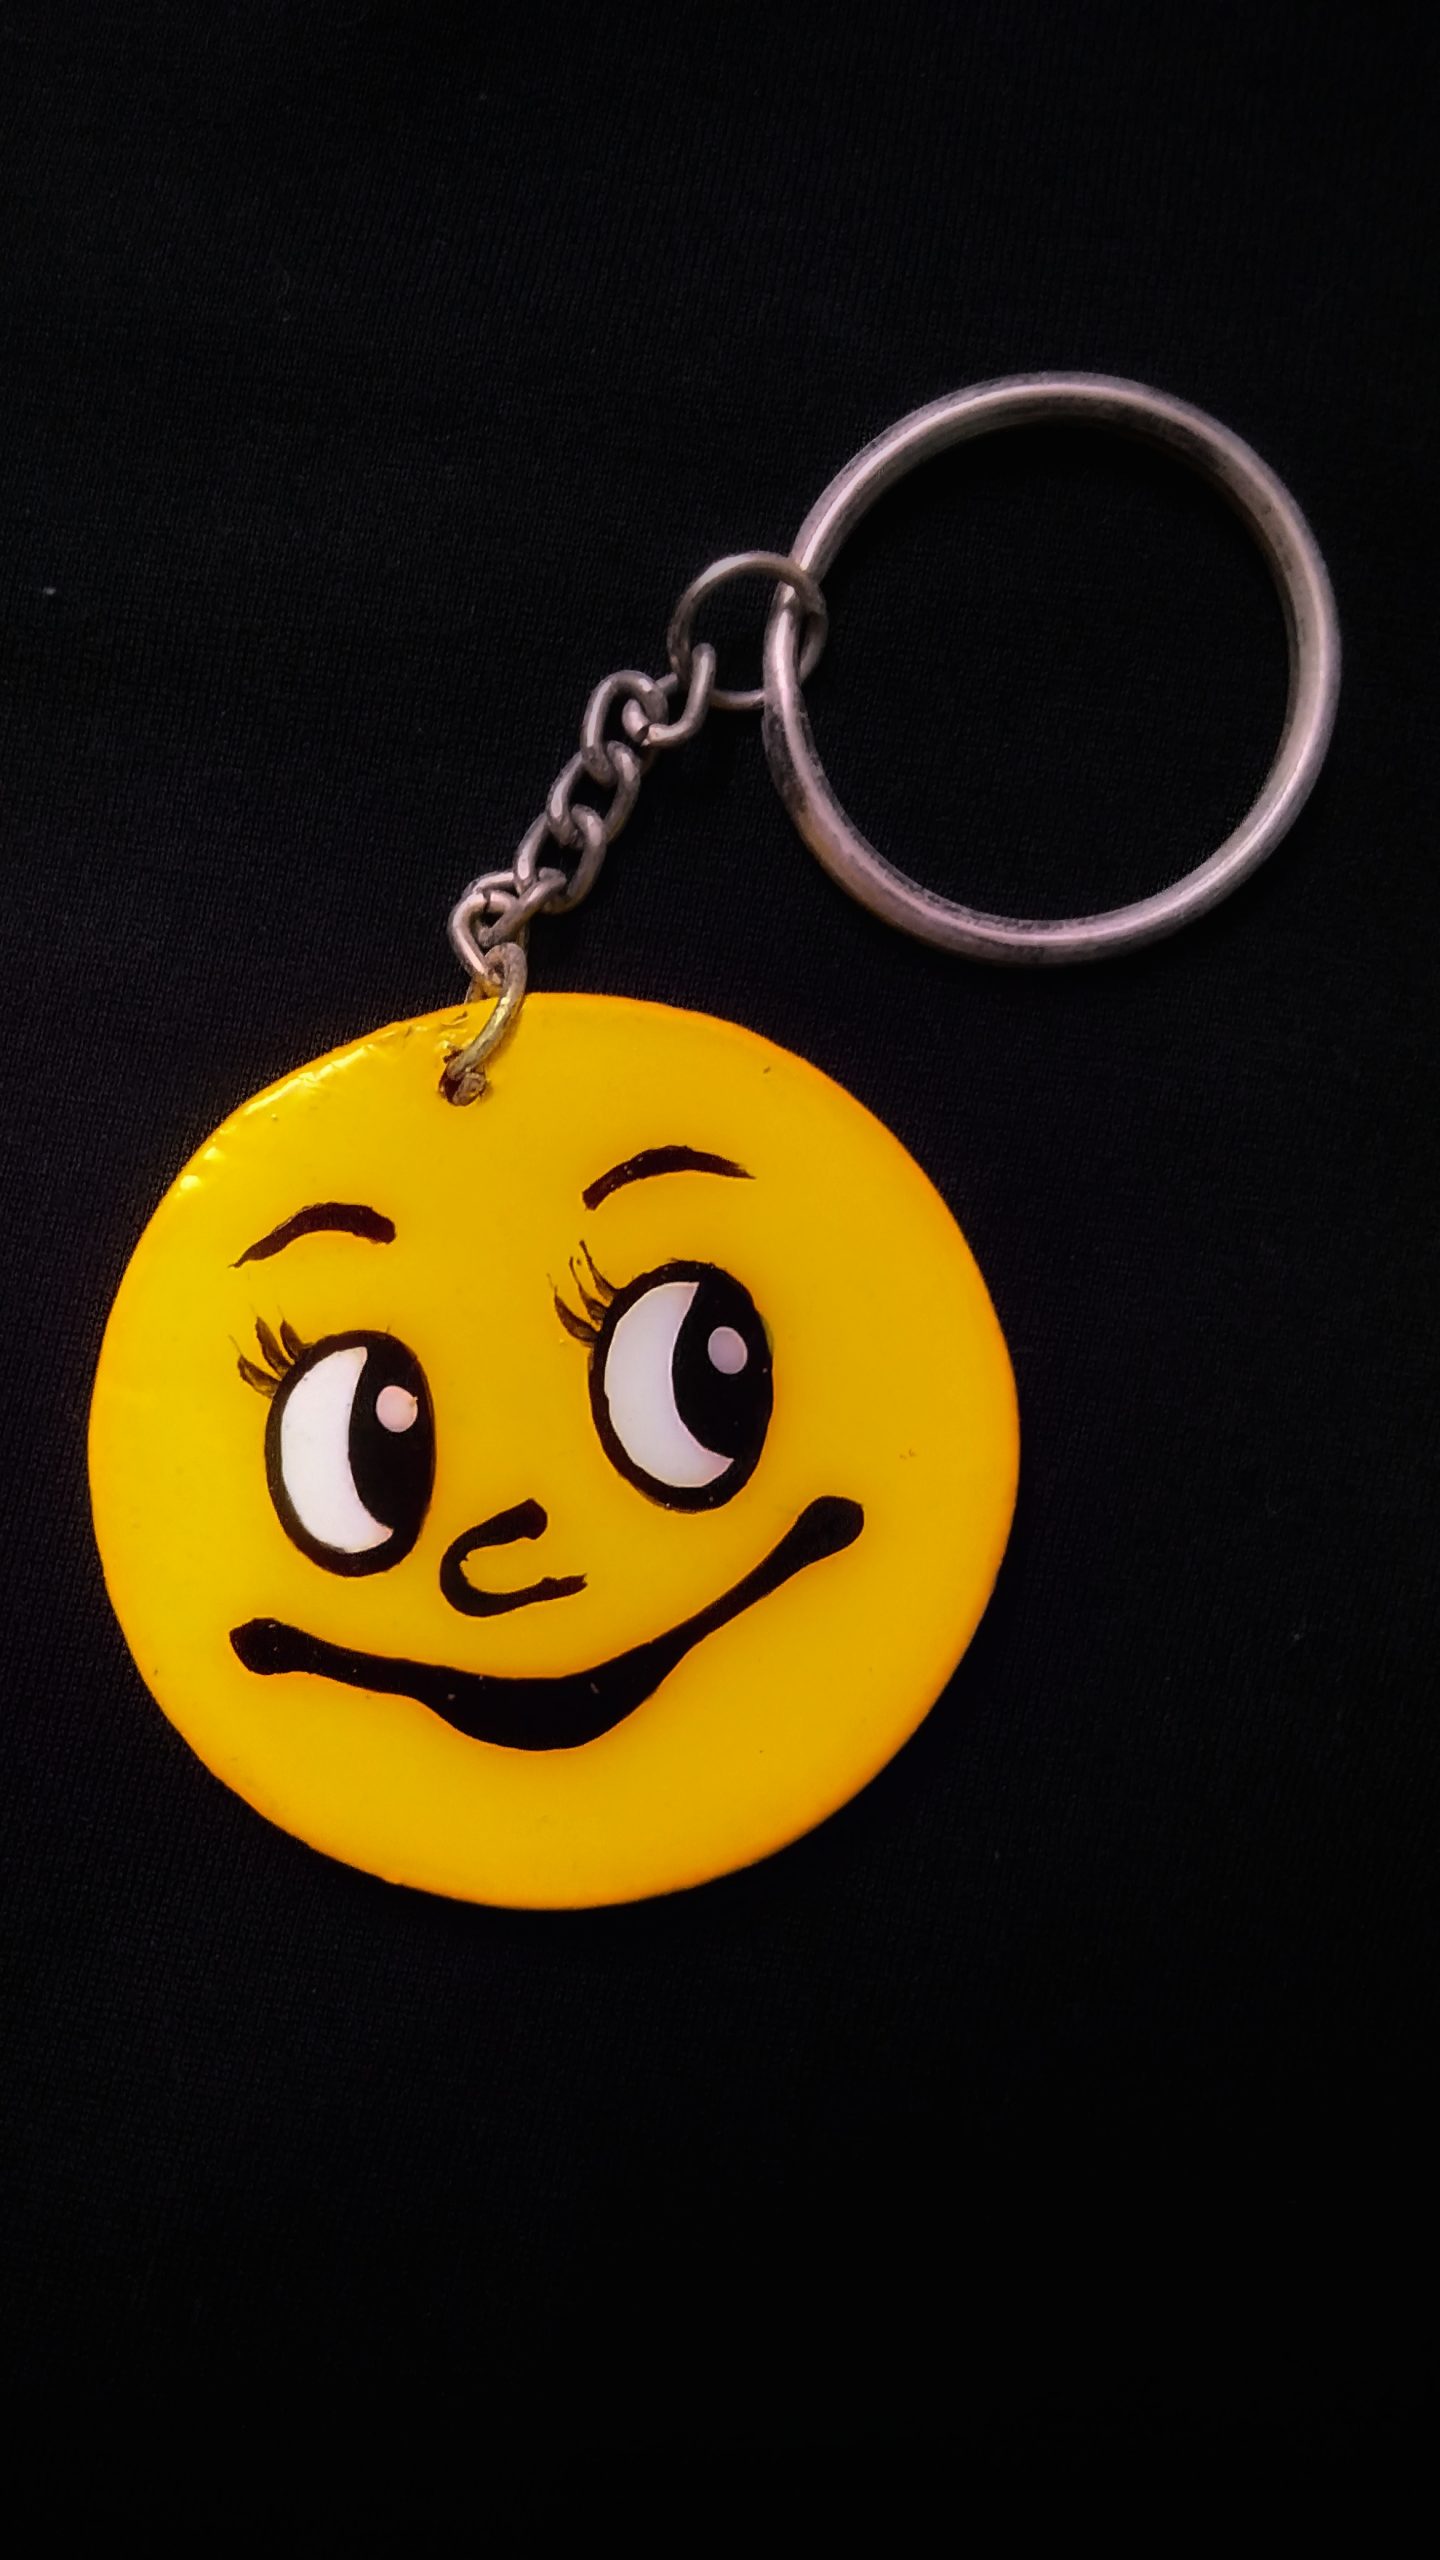 Smiley keychain